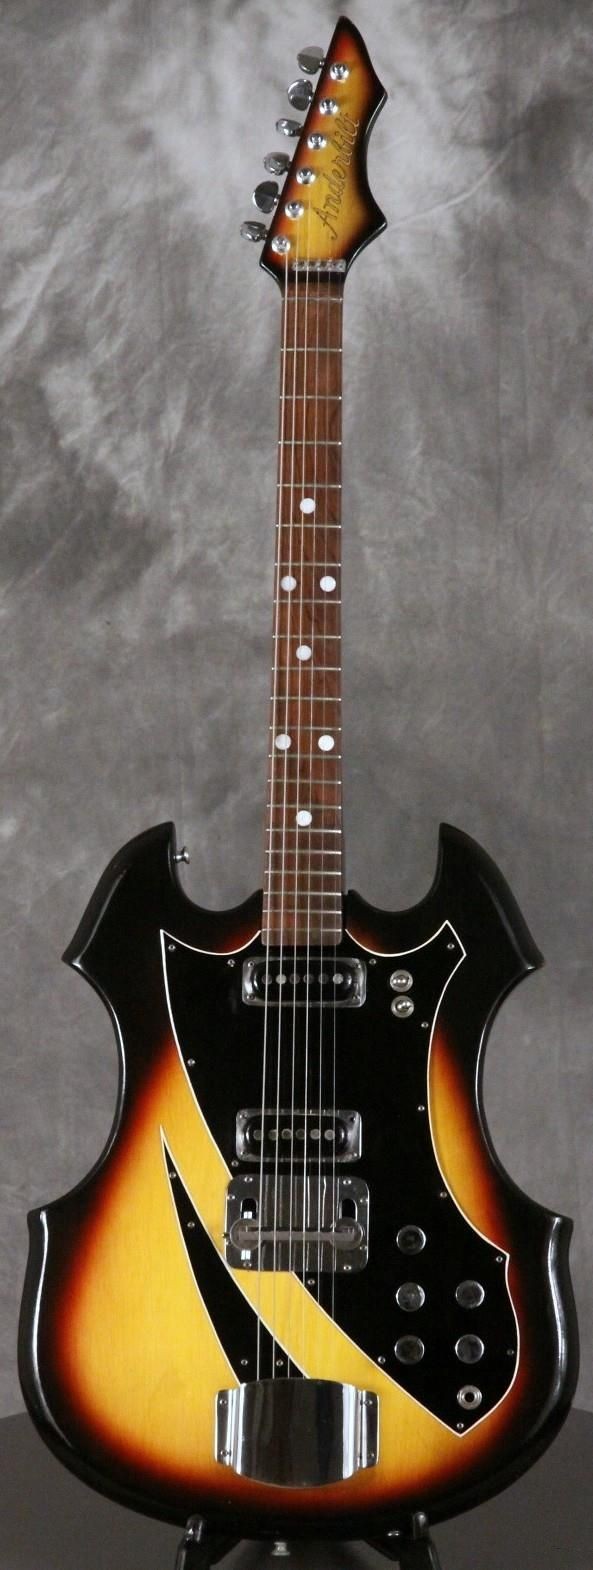 Anderbilt guitar in its original Sunburst finish